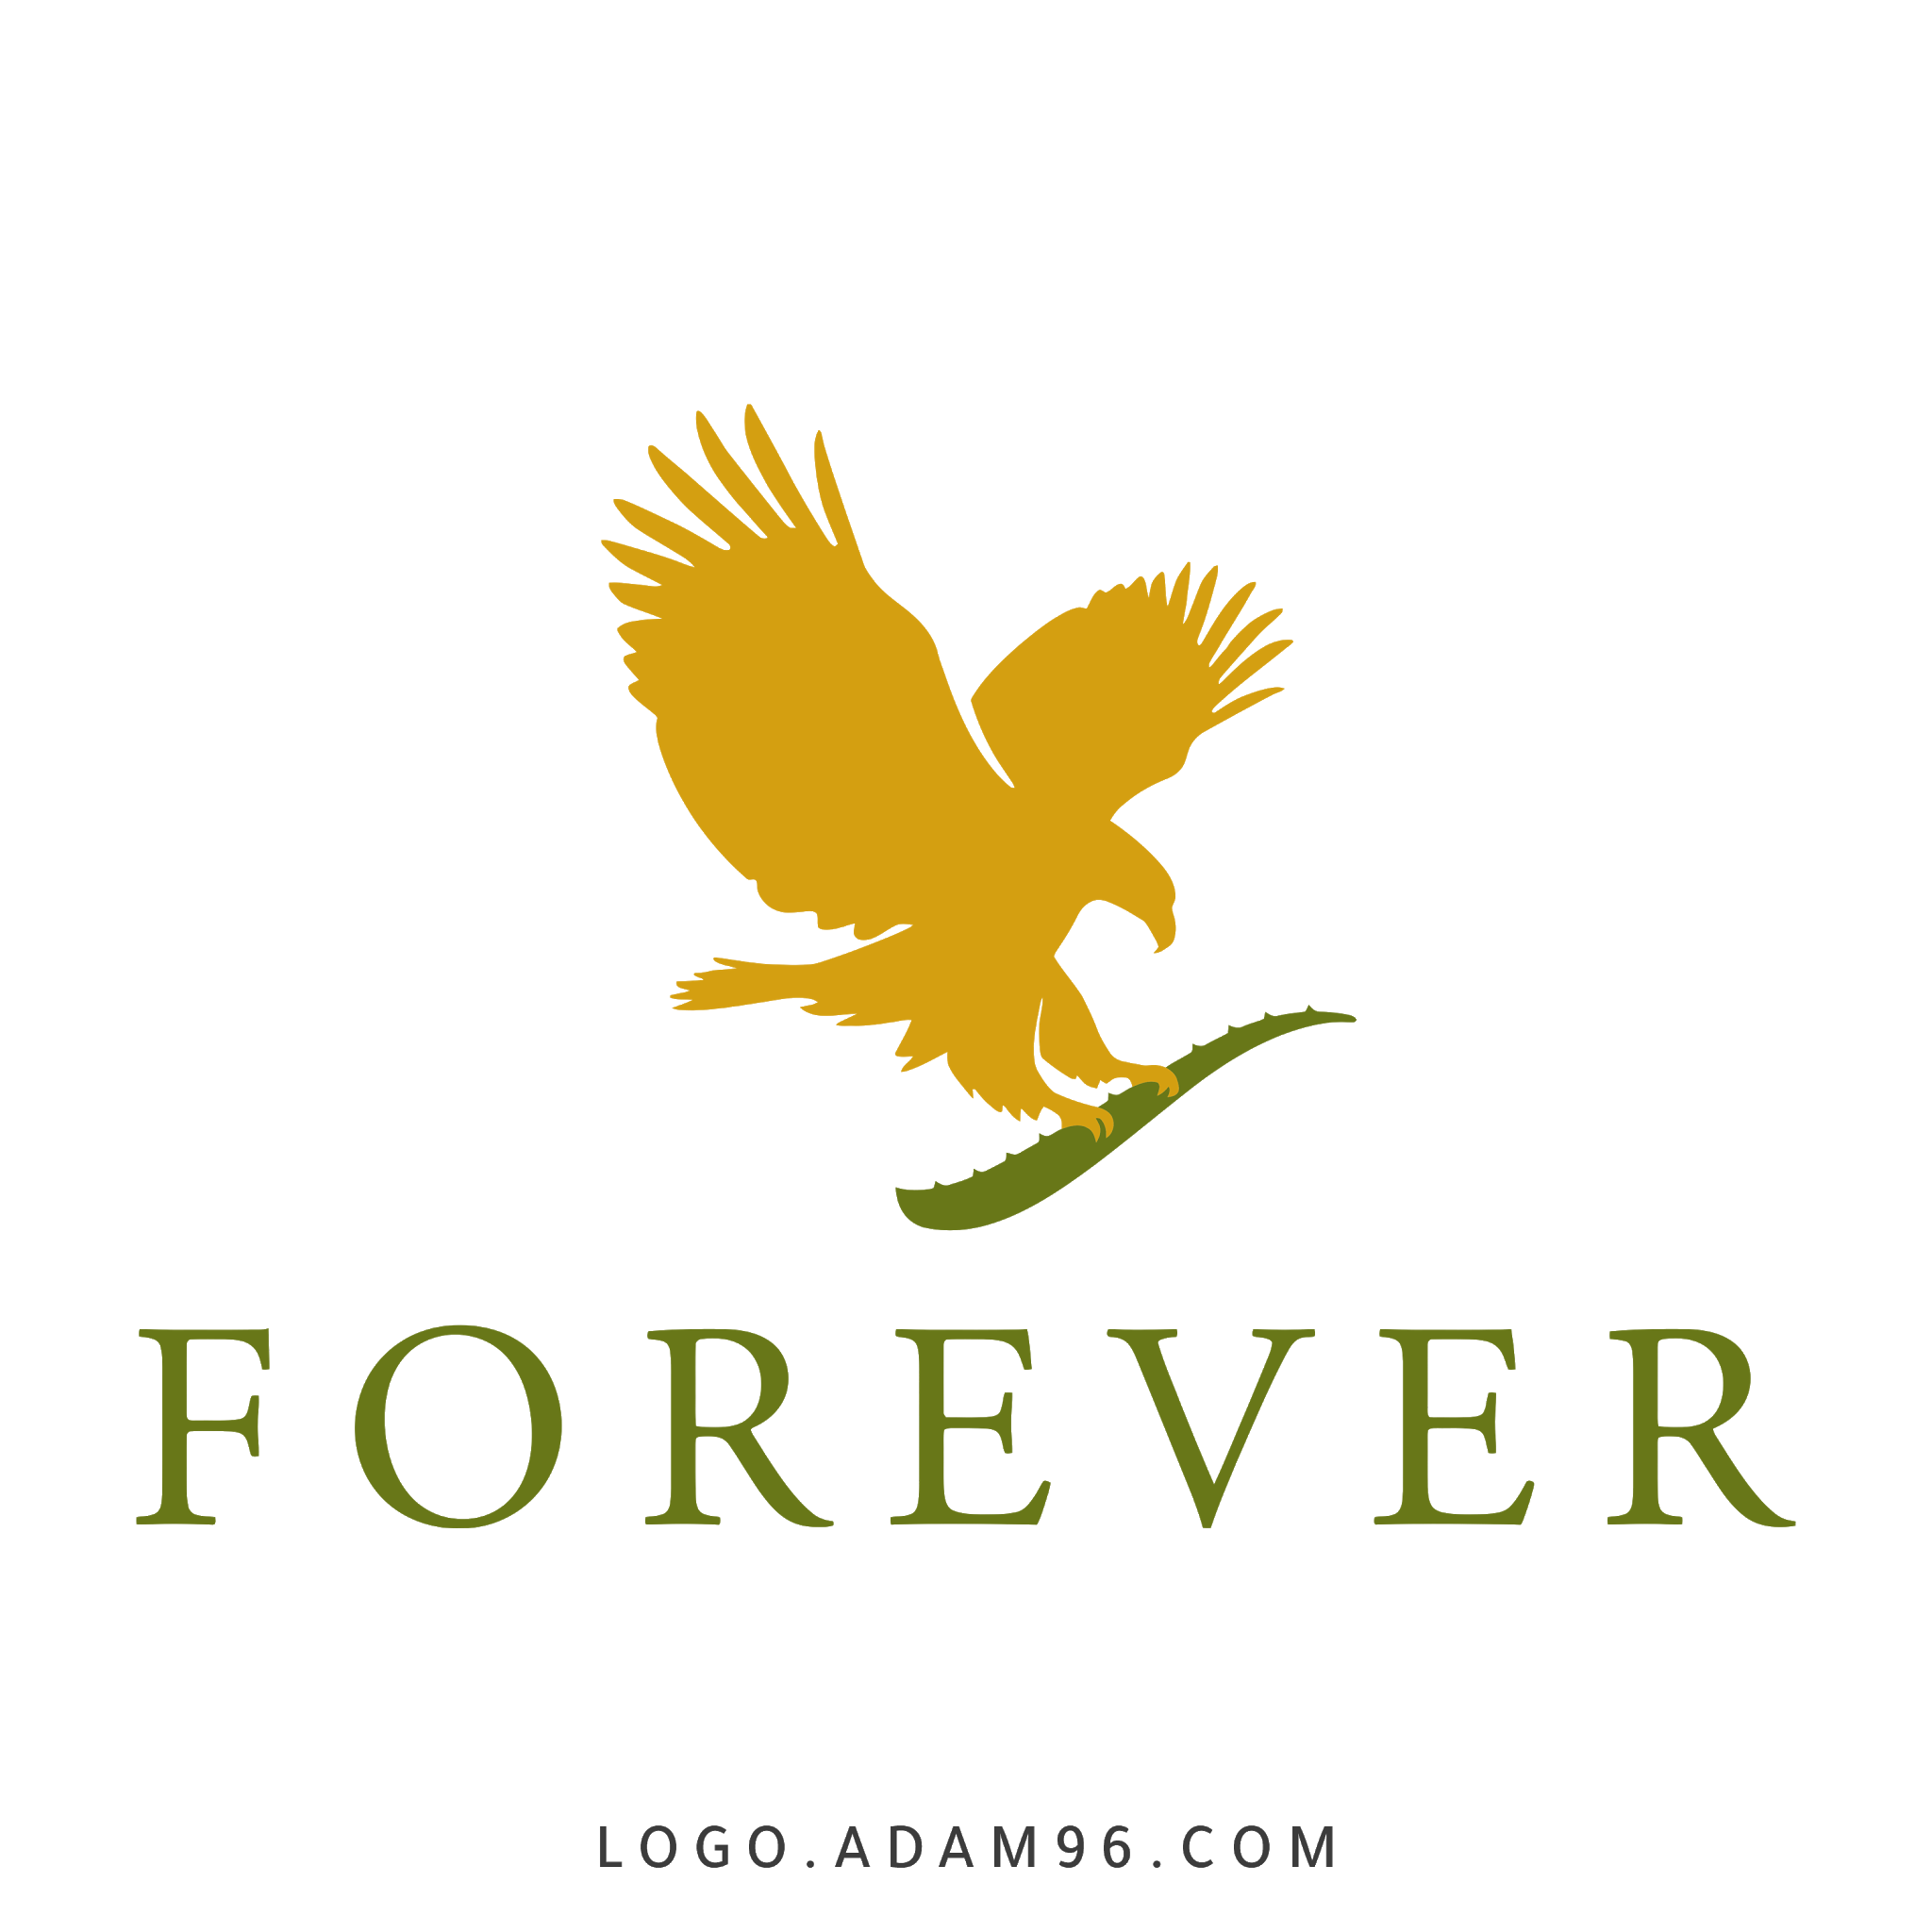 تحميل شعار شركة فوريفر العالمية لوجو رسمي عالي الدقة بصيغة PNG